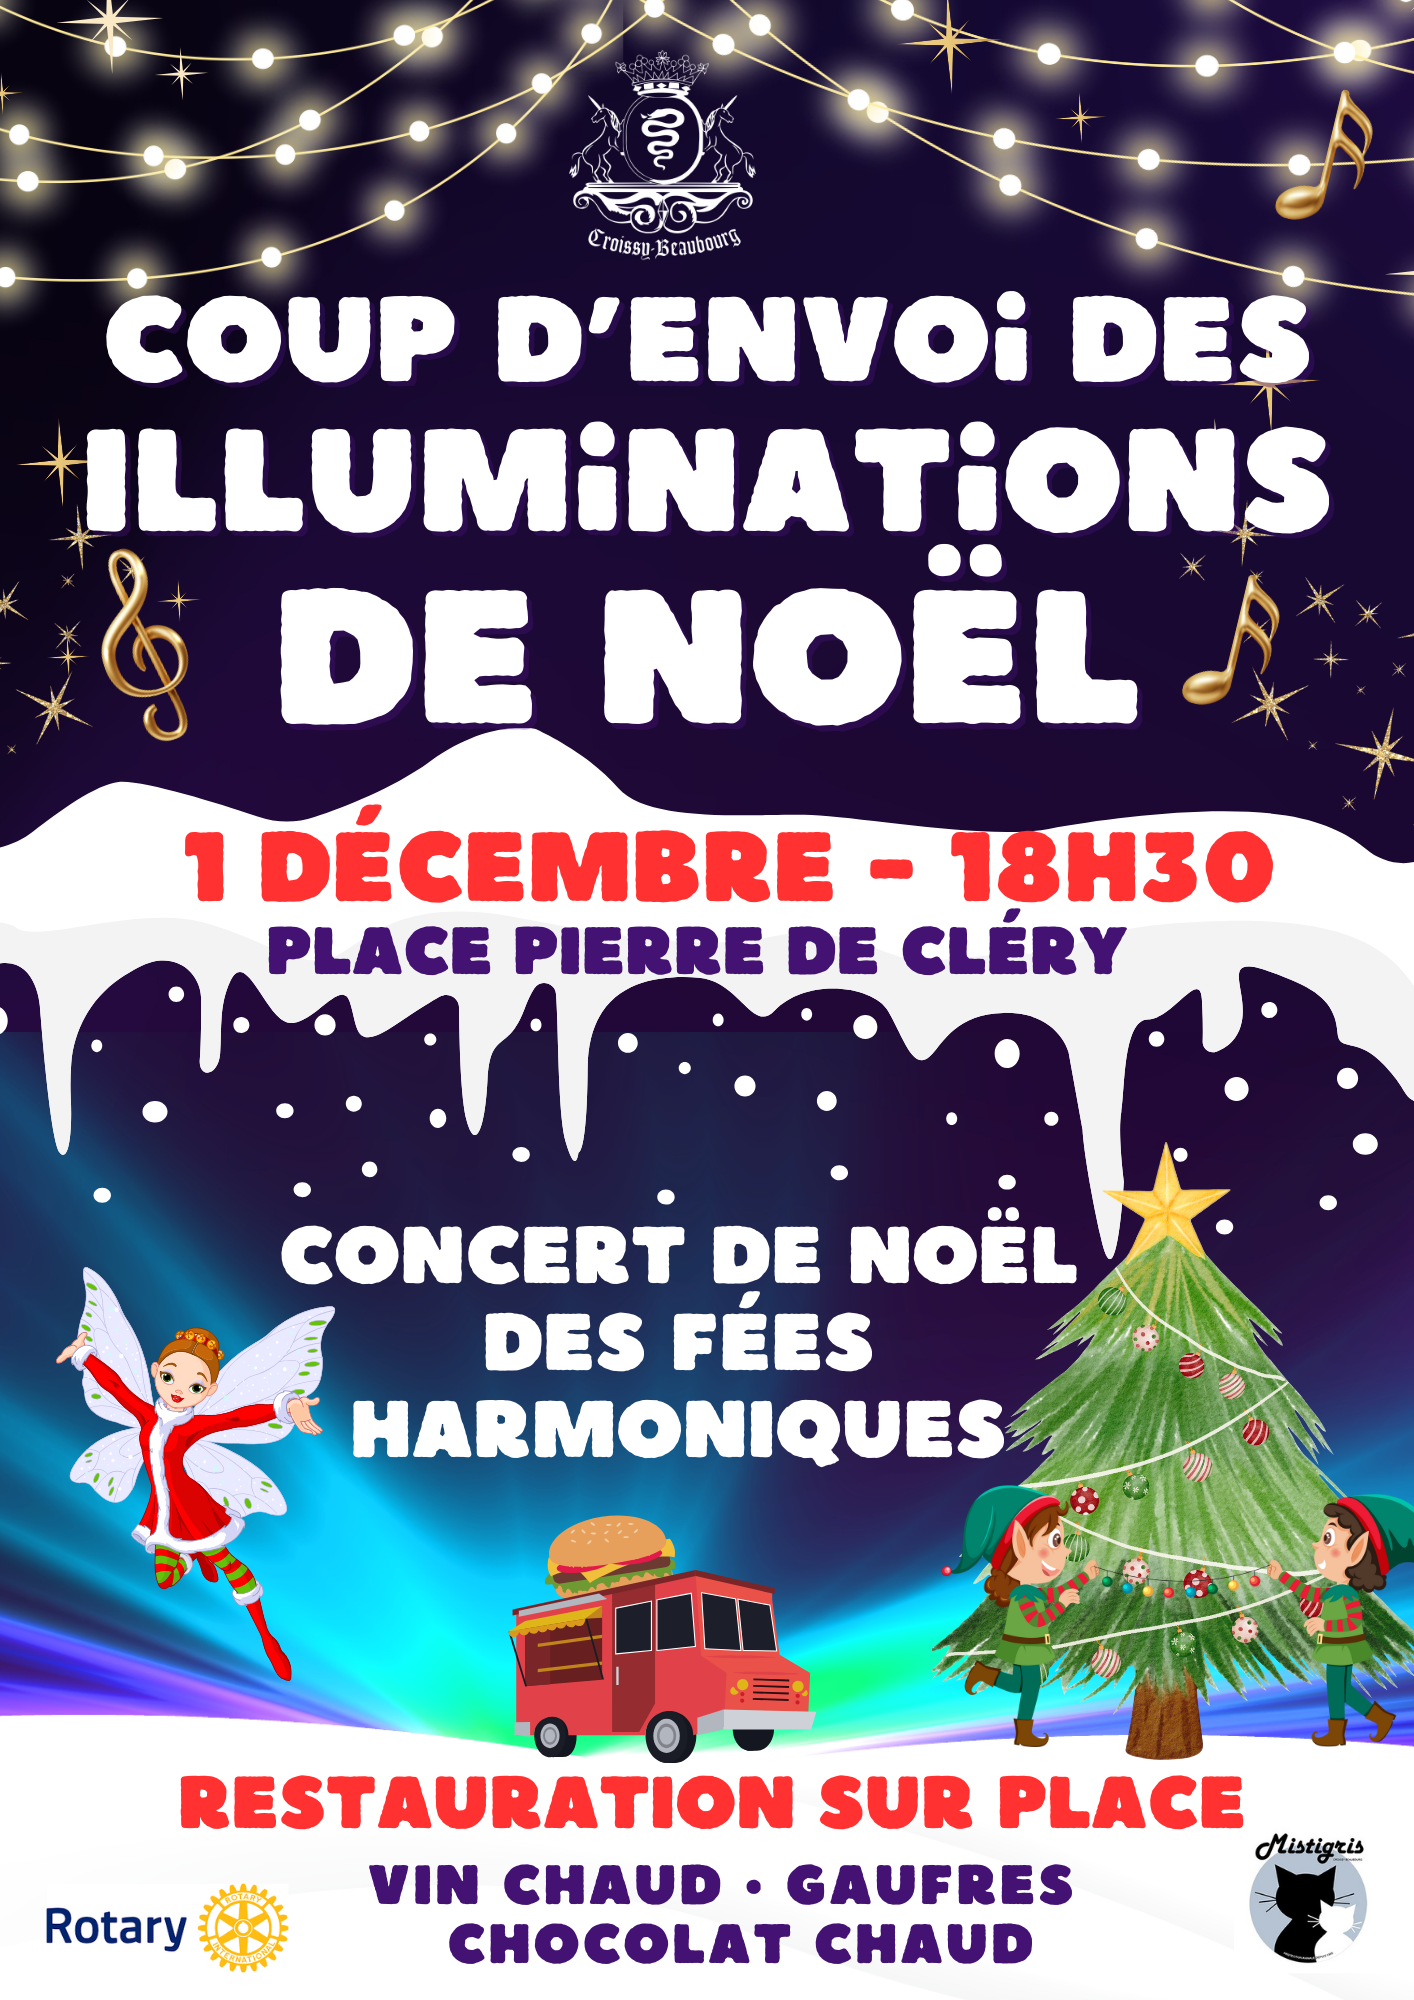 Affiche des Illuminations de noel à Croissy-Beaubourg. Concert des Fées Harmoniques